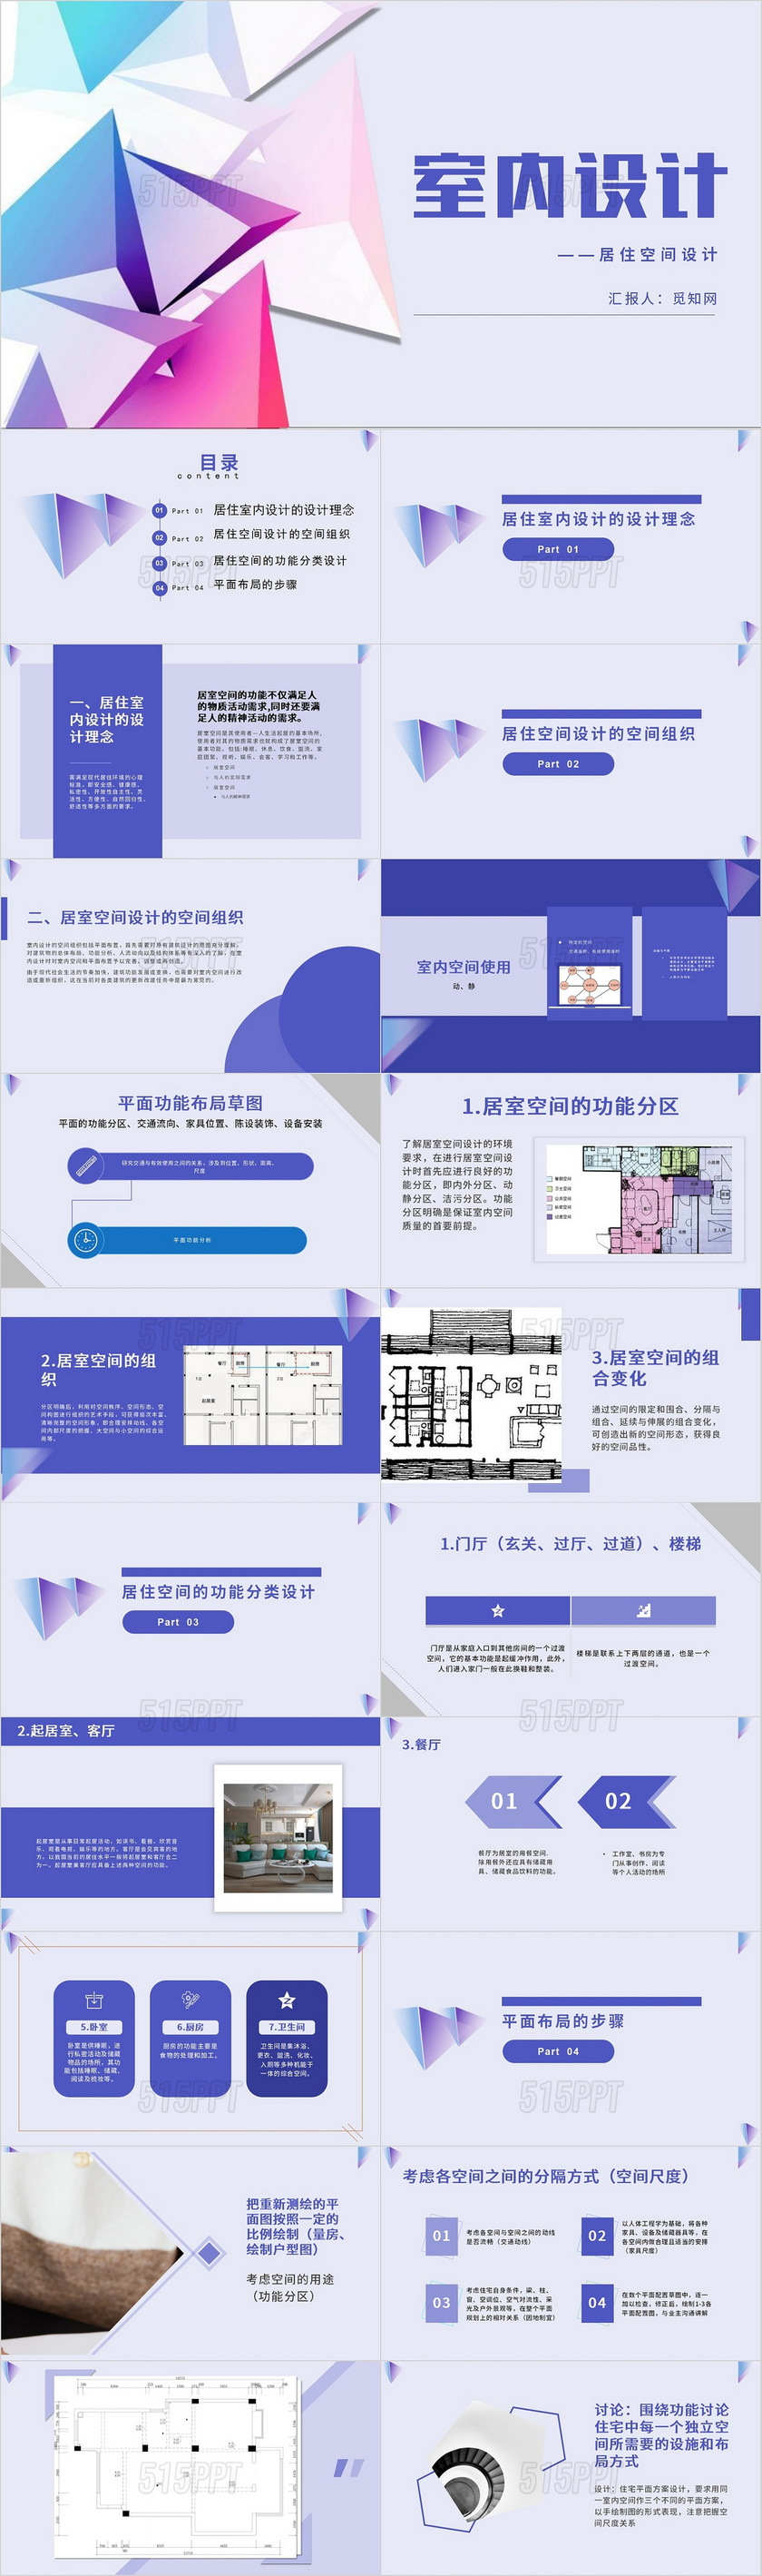 蓝色简约清爽商务居住空间设计室内设计PPT模板居住空间设计 (5)